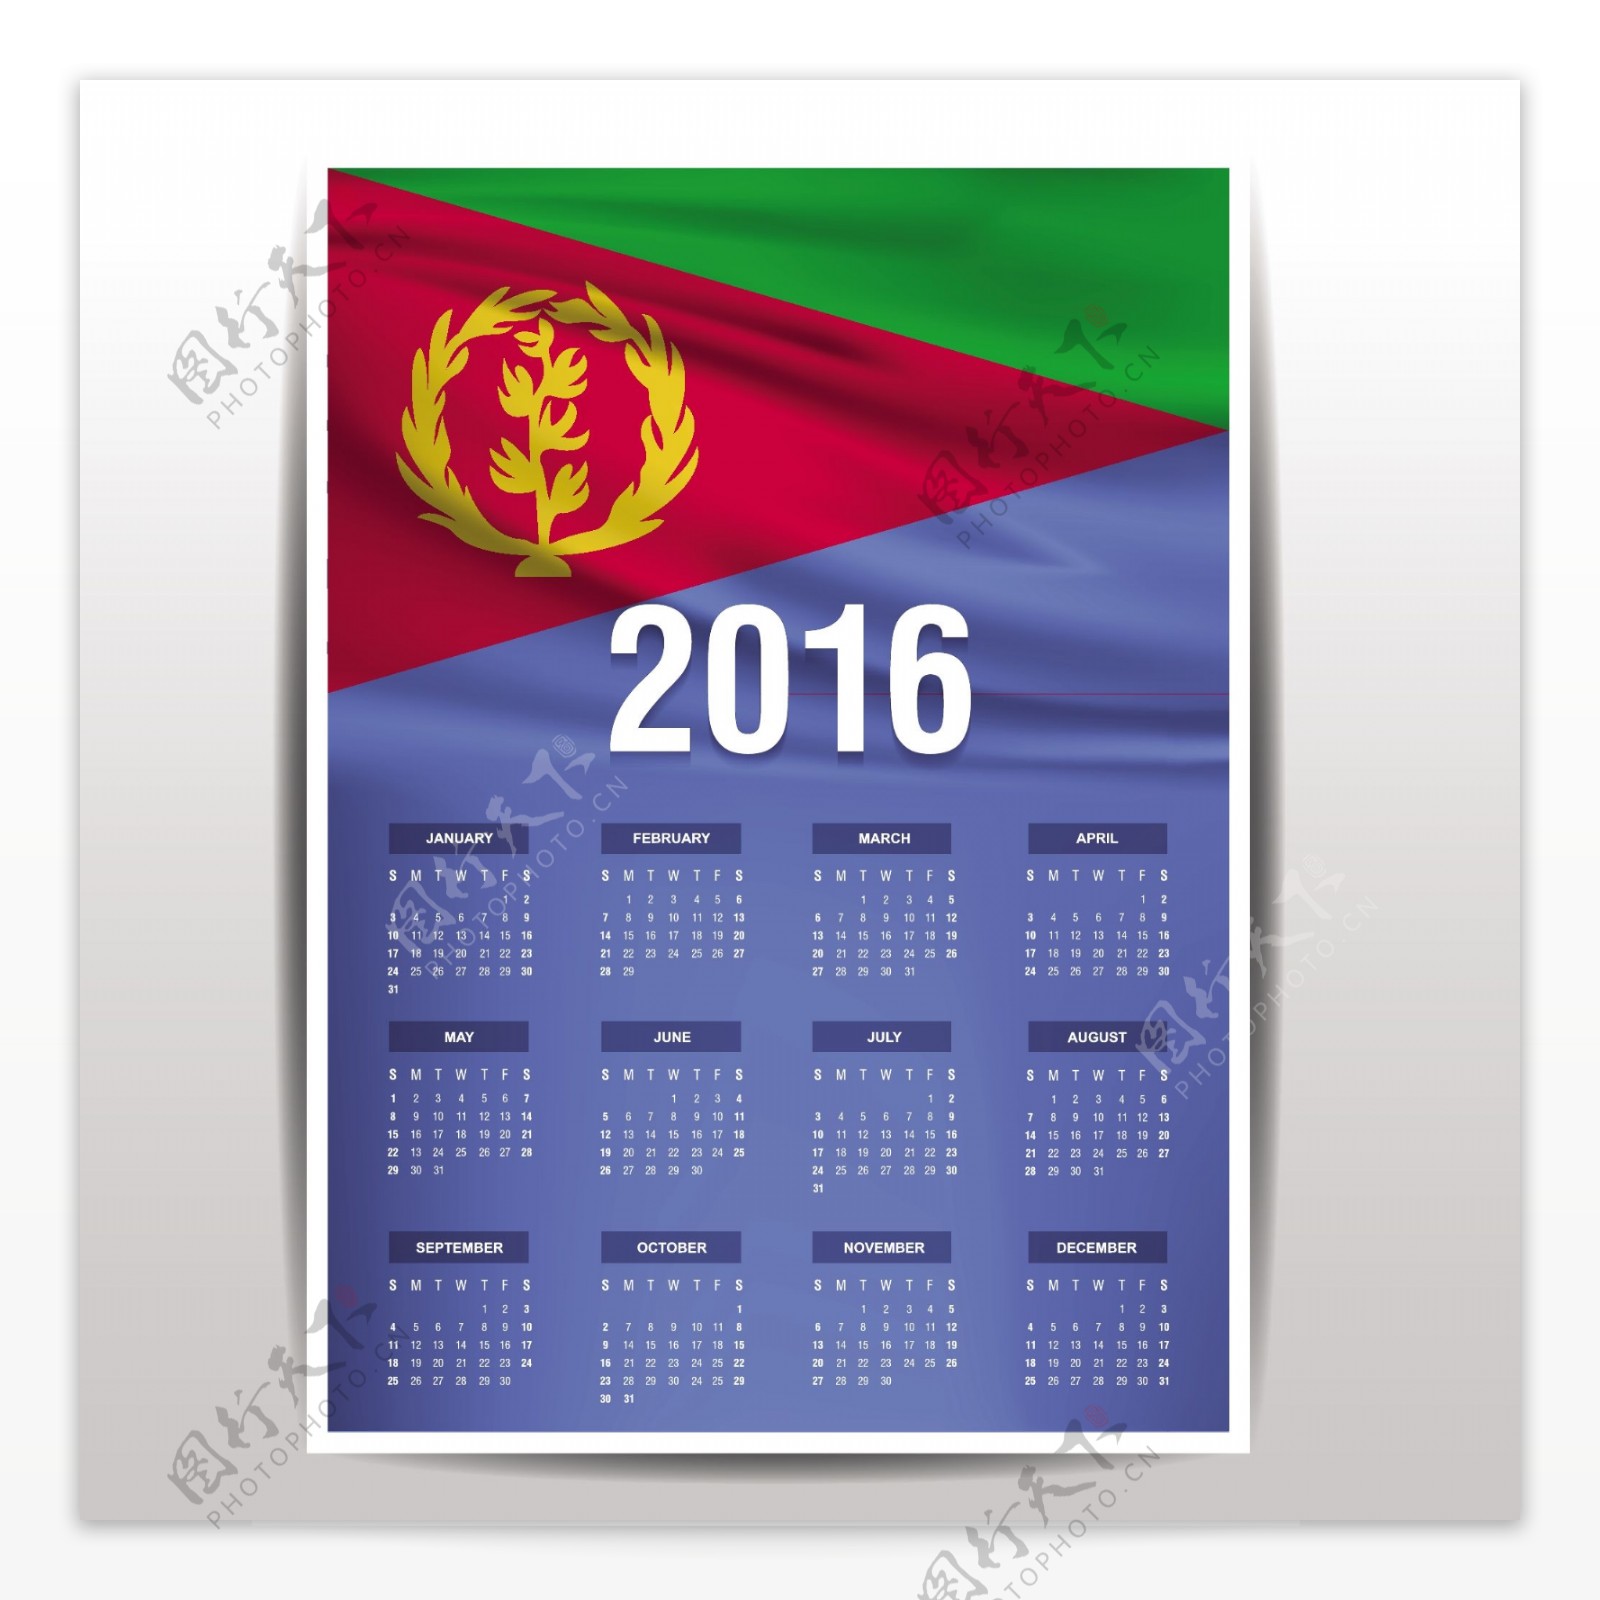 厄立特里亚历2016